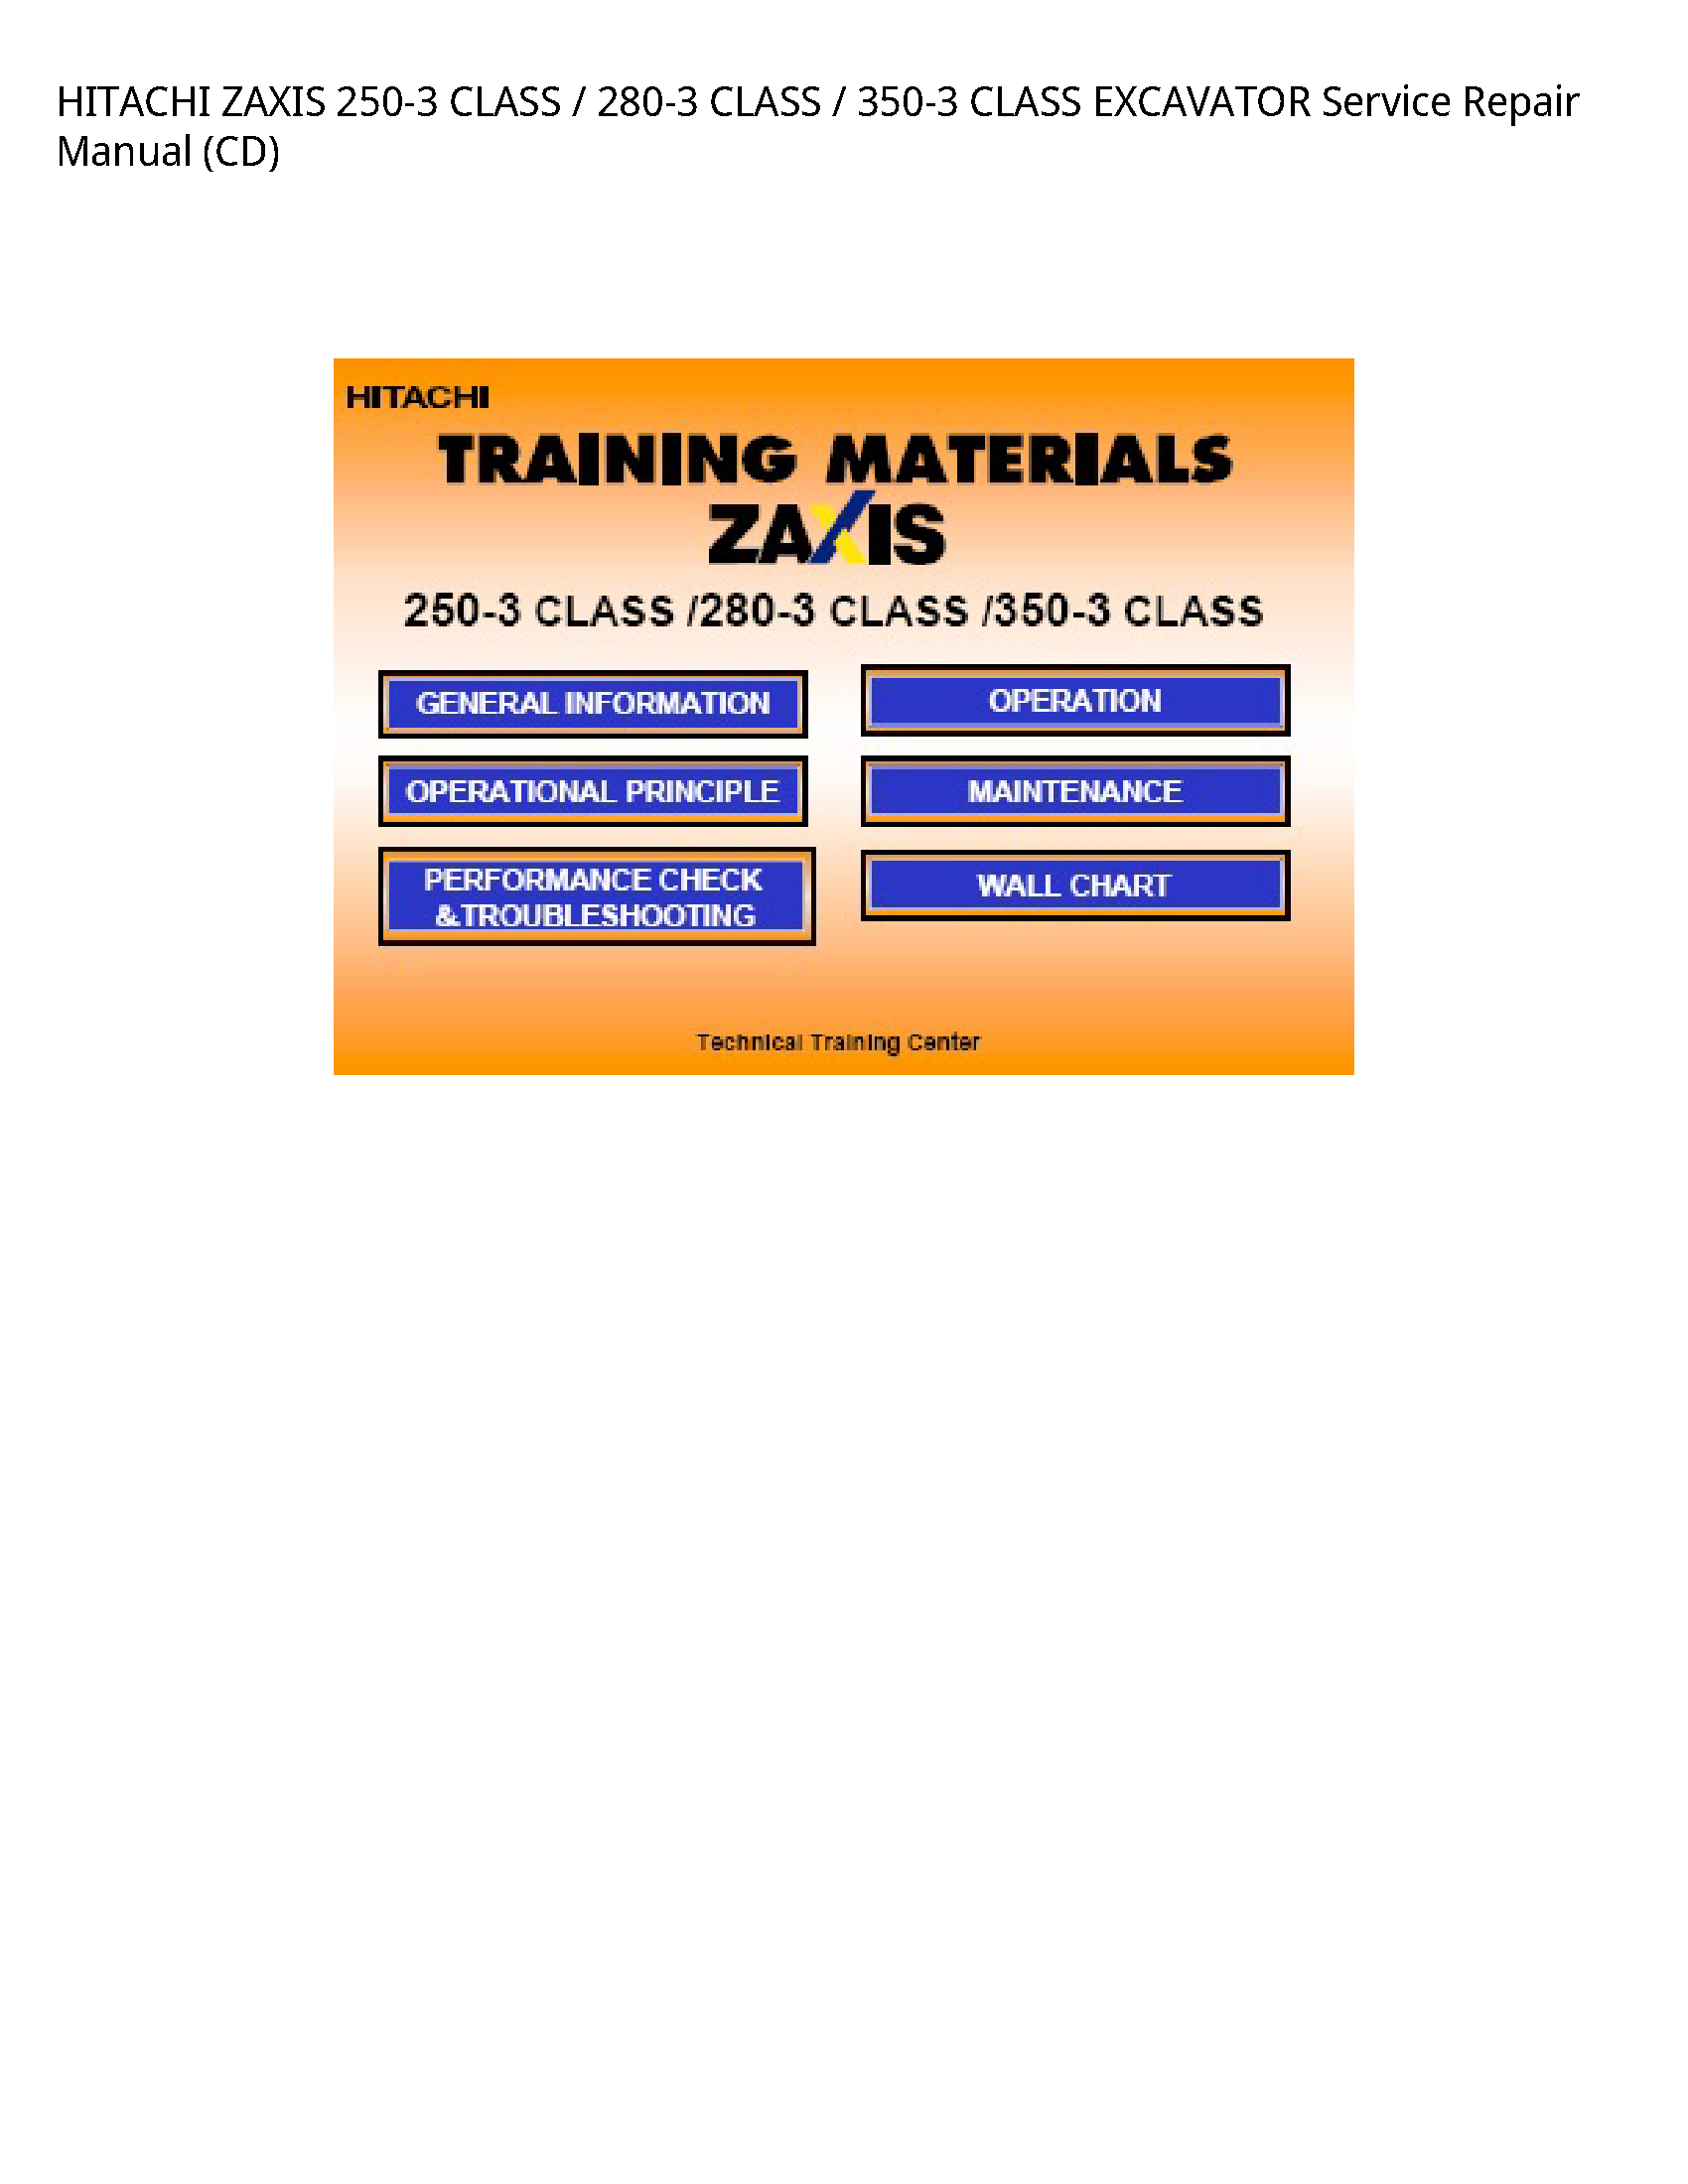 Hitachi 250-3 ZAXIS CLASS CLASS CLASS EXCAVATOR manual